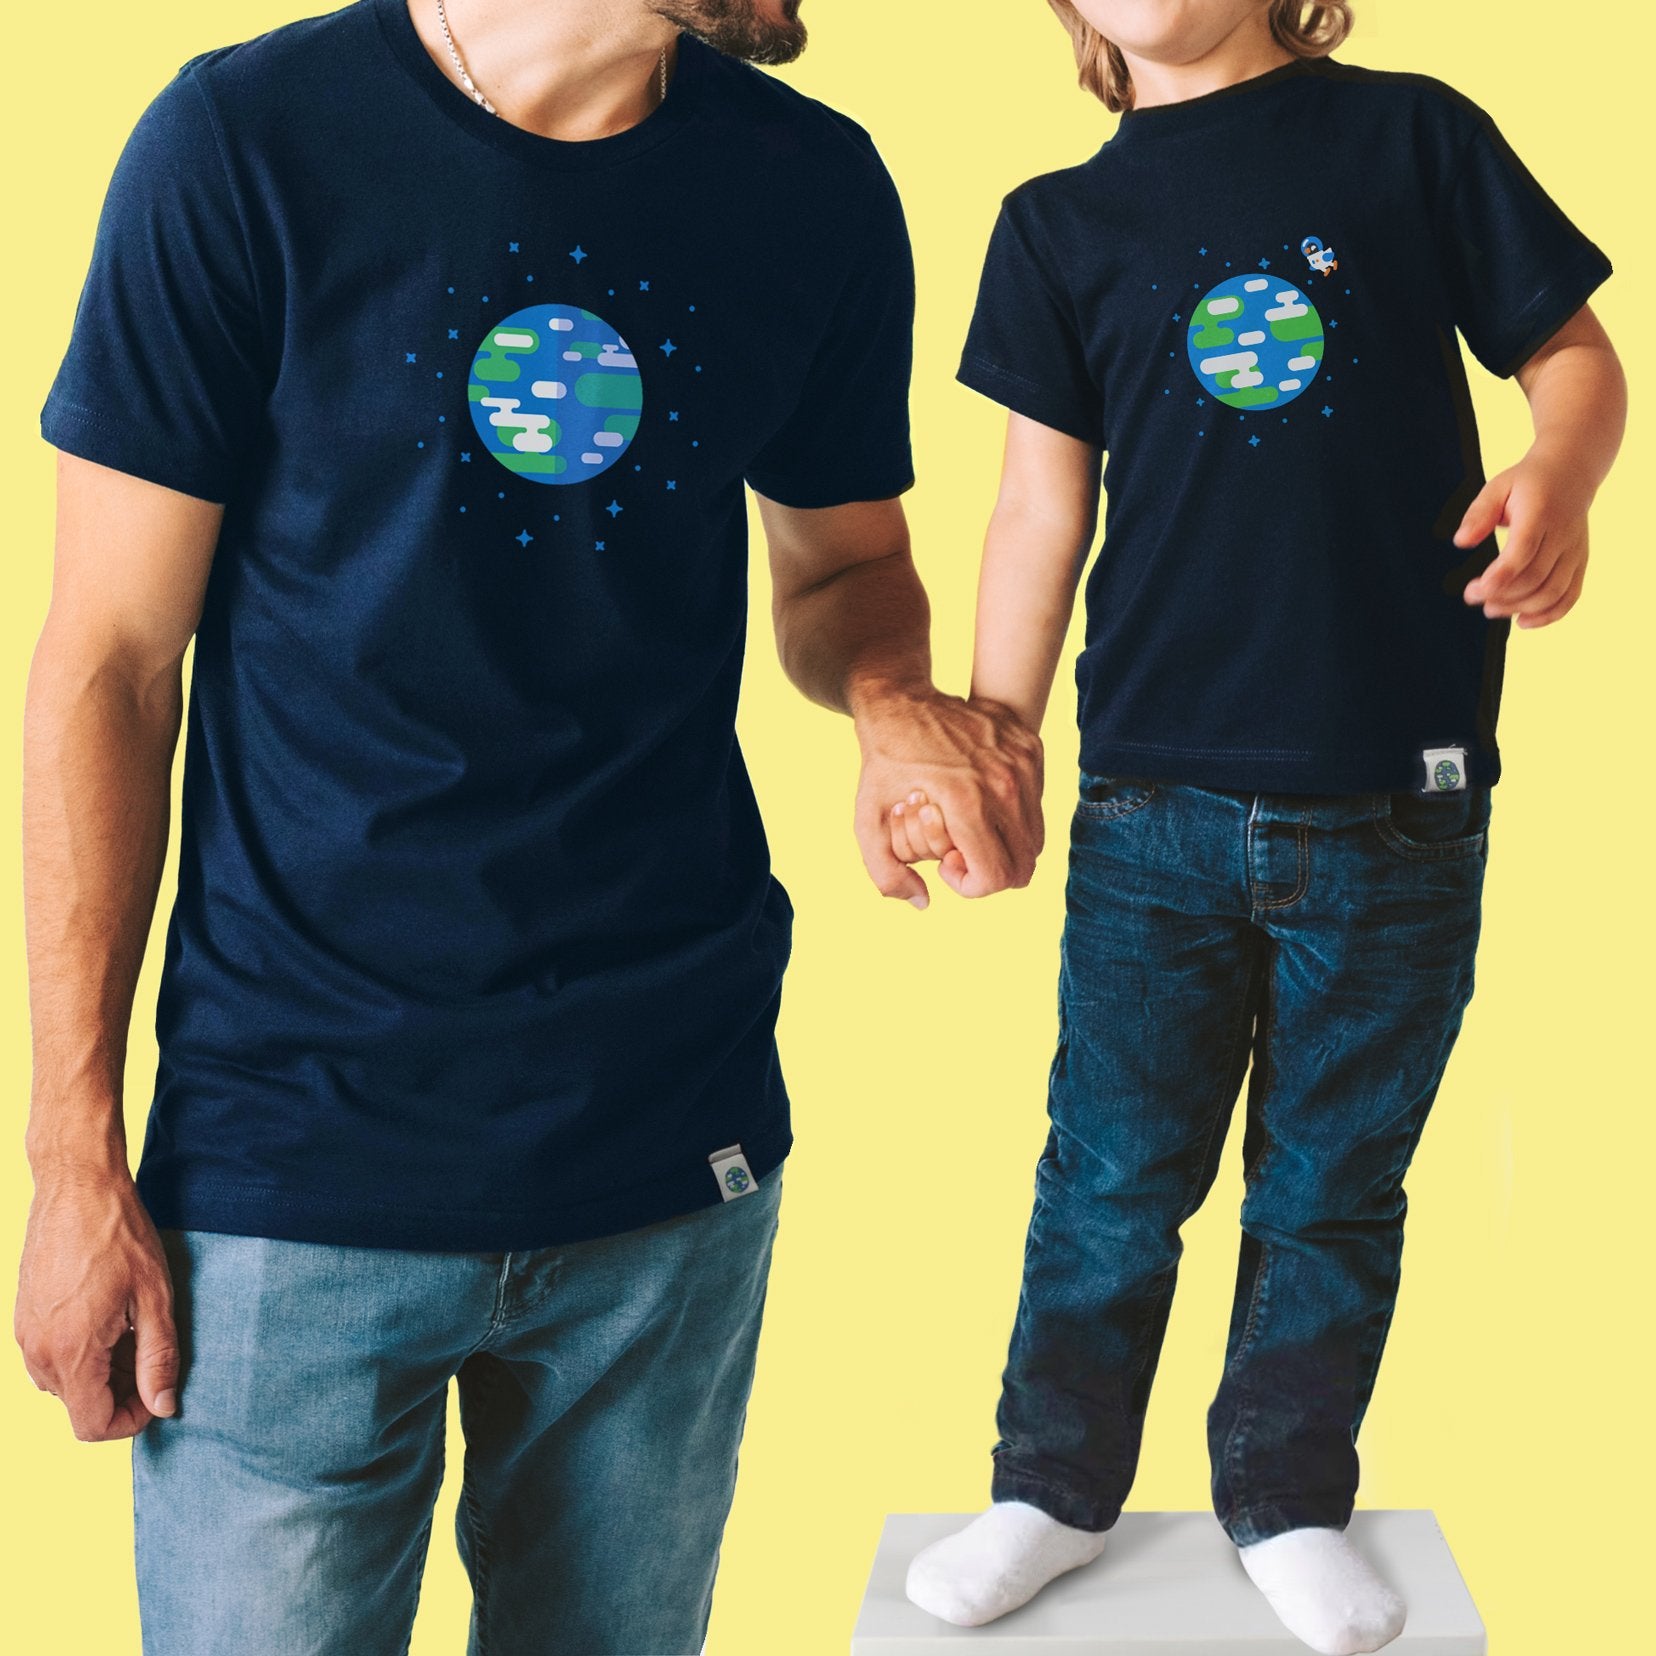 Merch Earth the – kurzgesagt Official – shop T-Shirt Kids